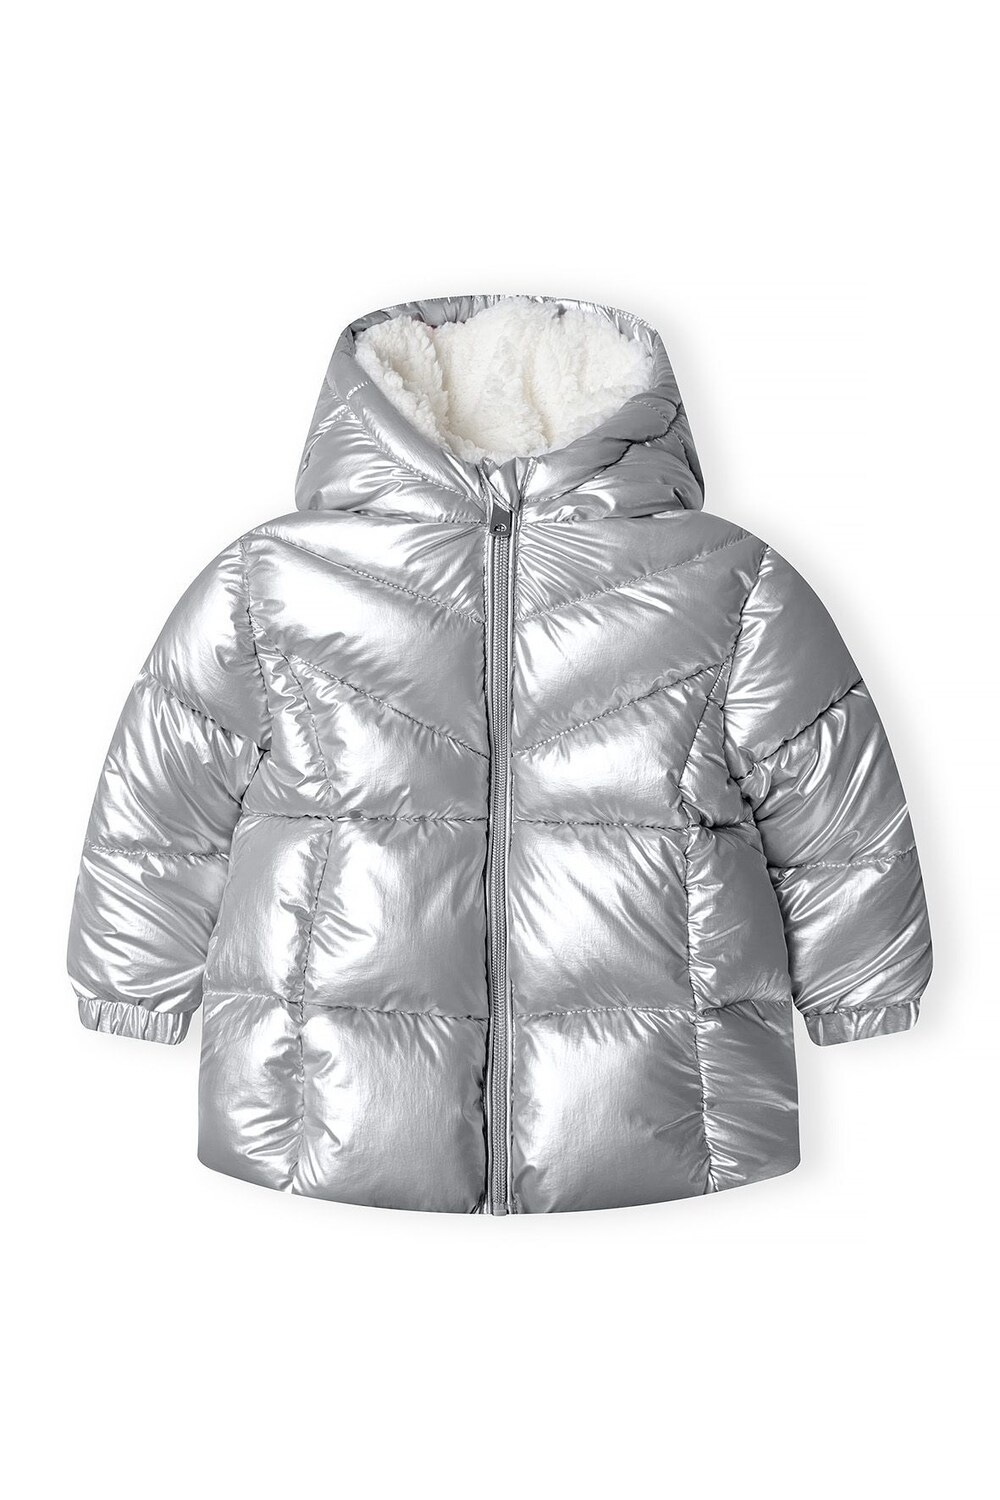 Зимняя куртка MINOTI, серебро